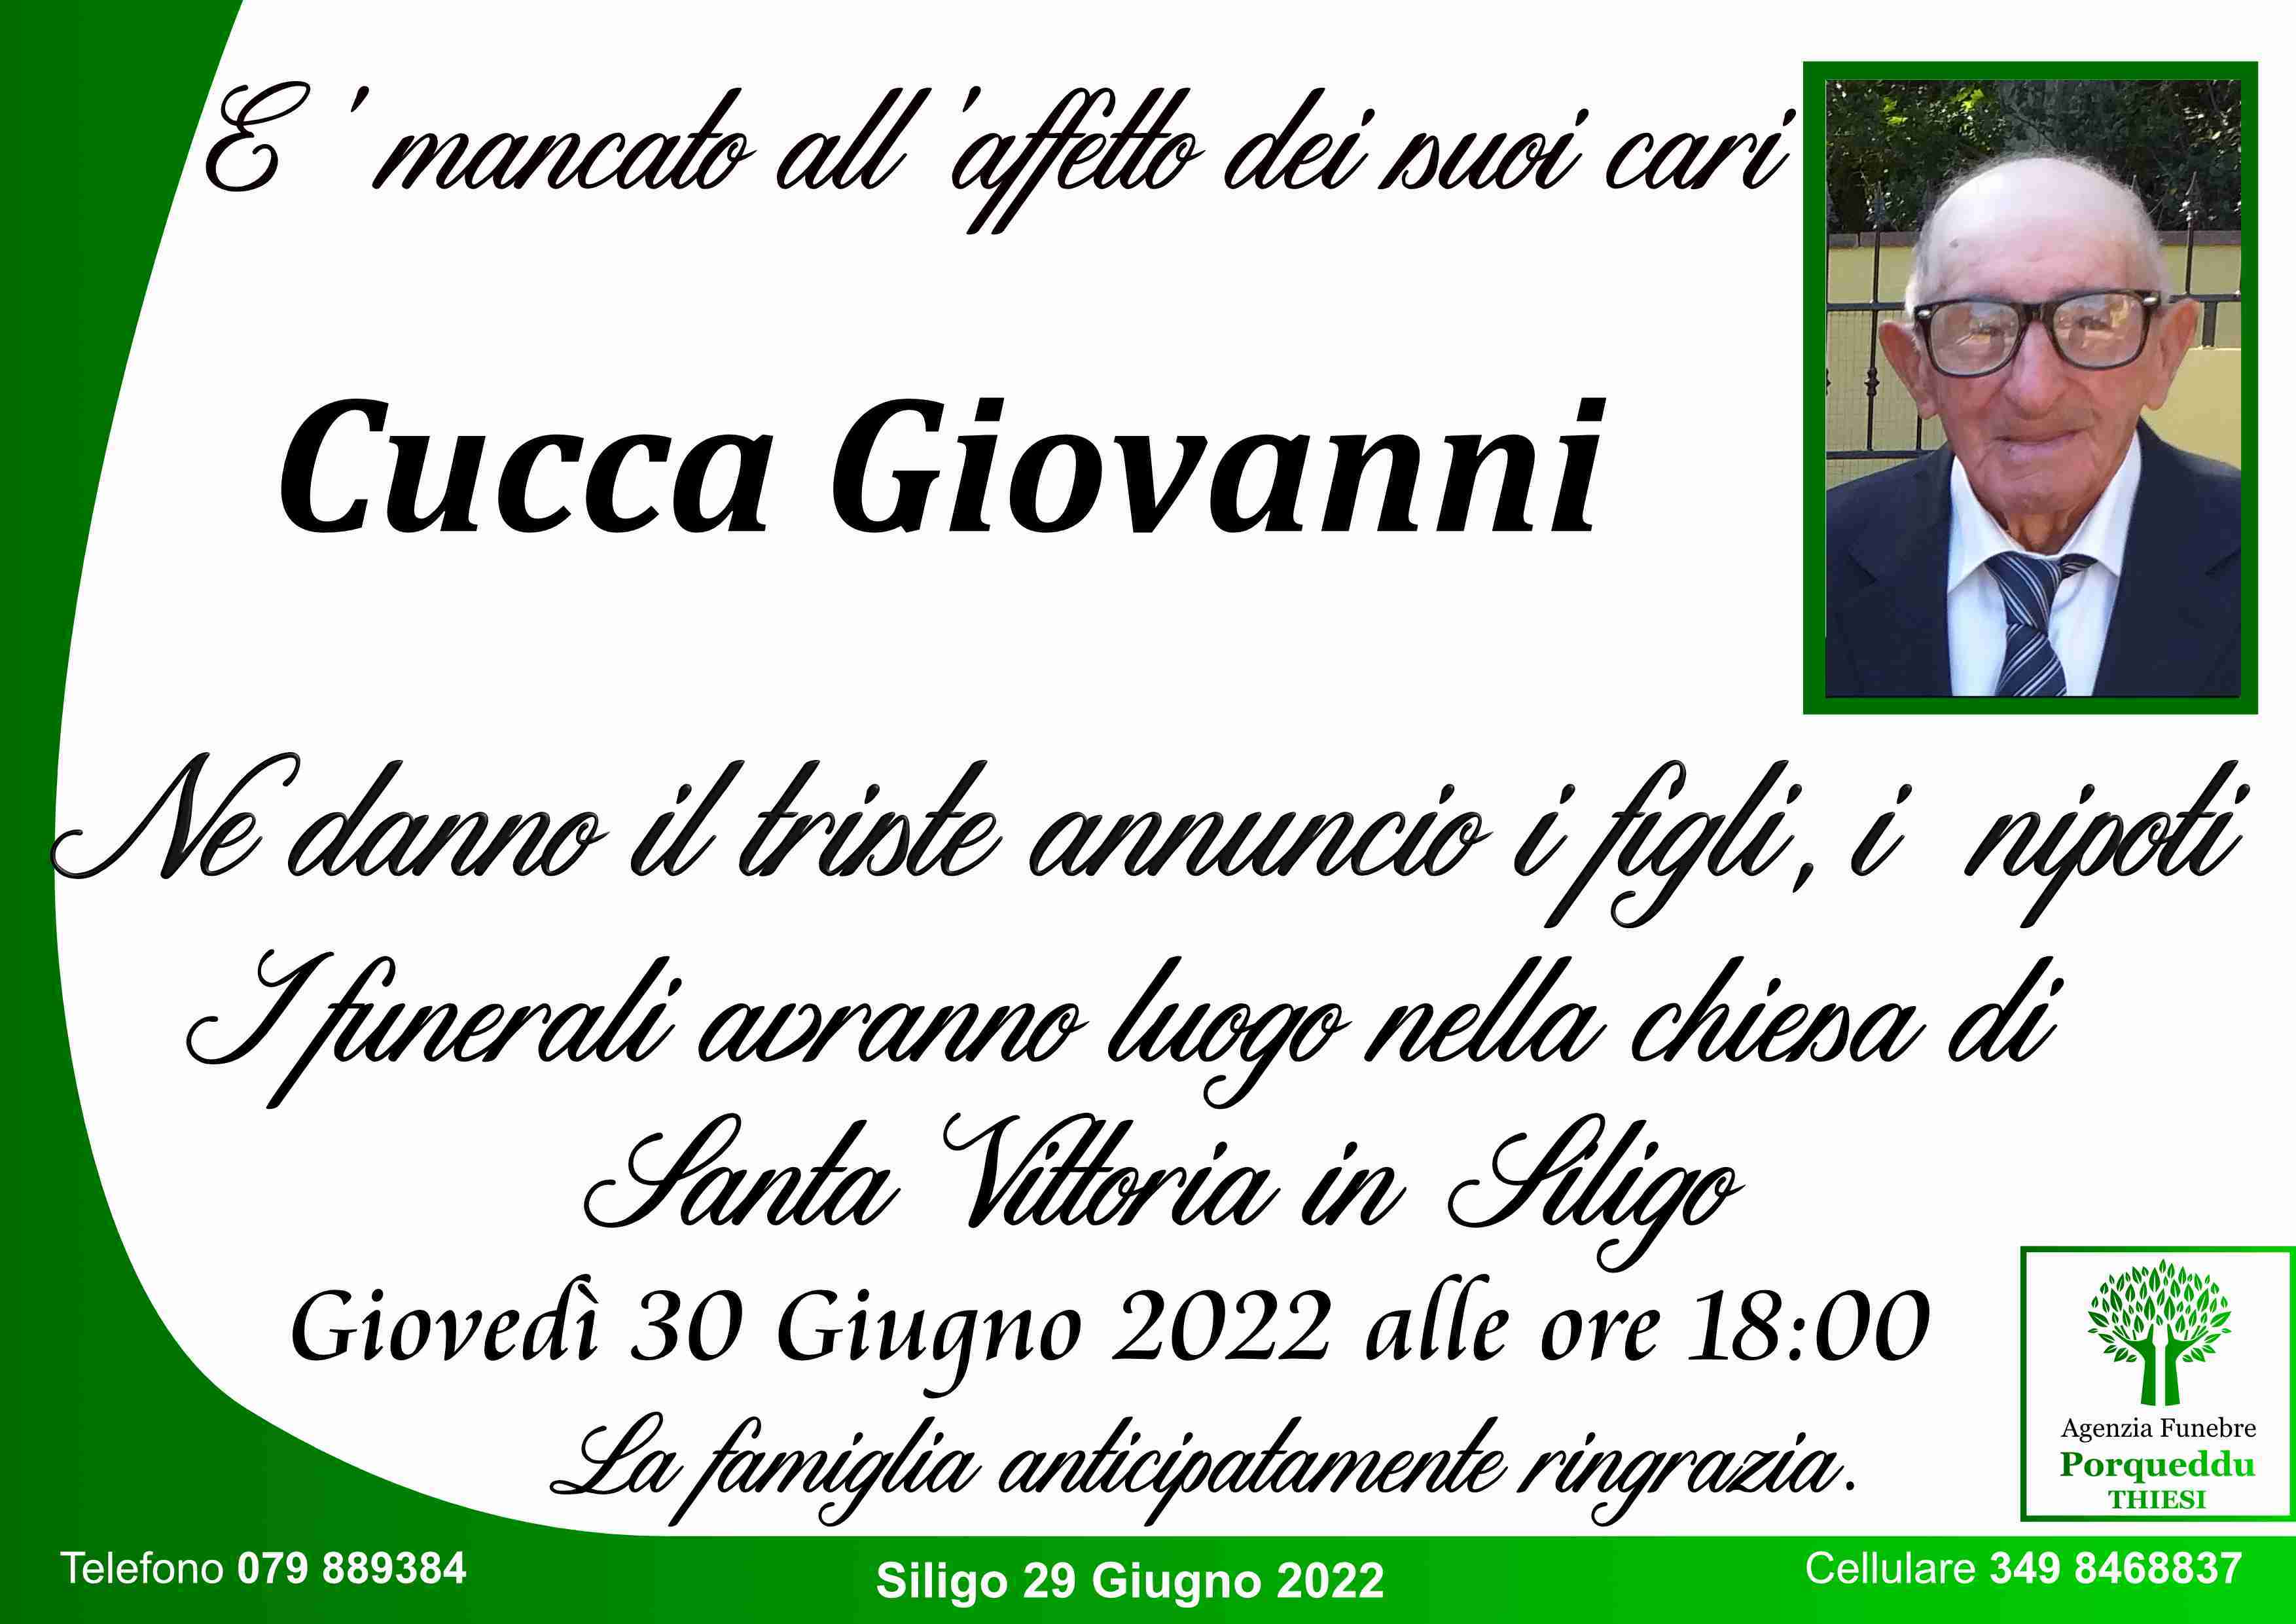 Giovanni Cucca